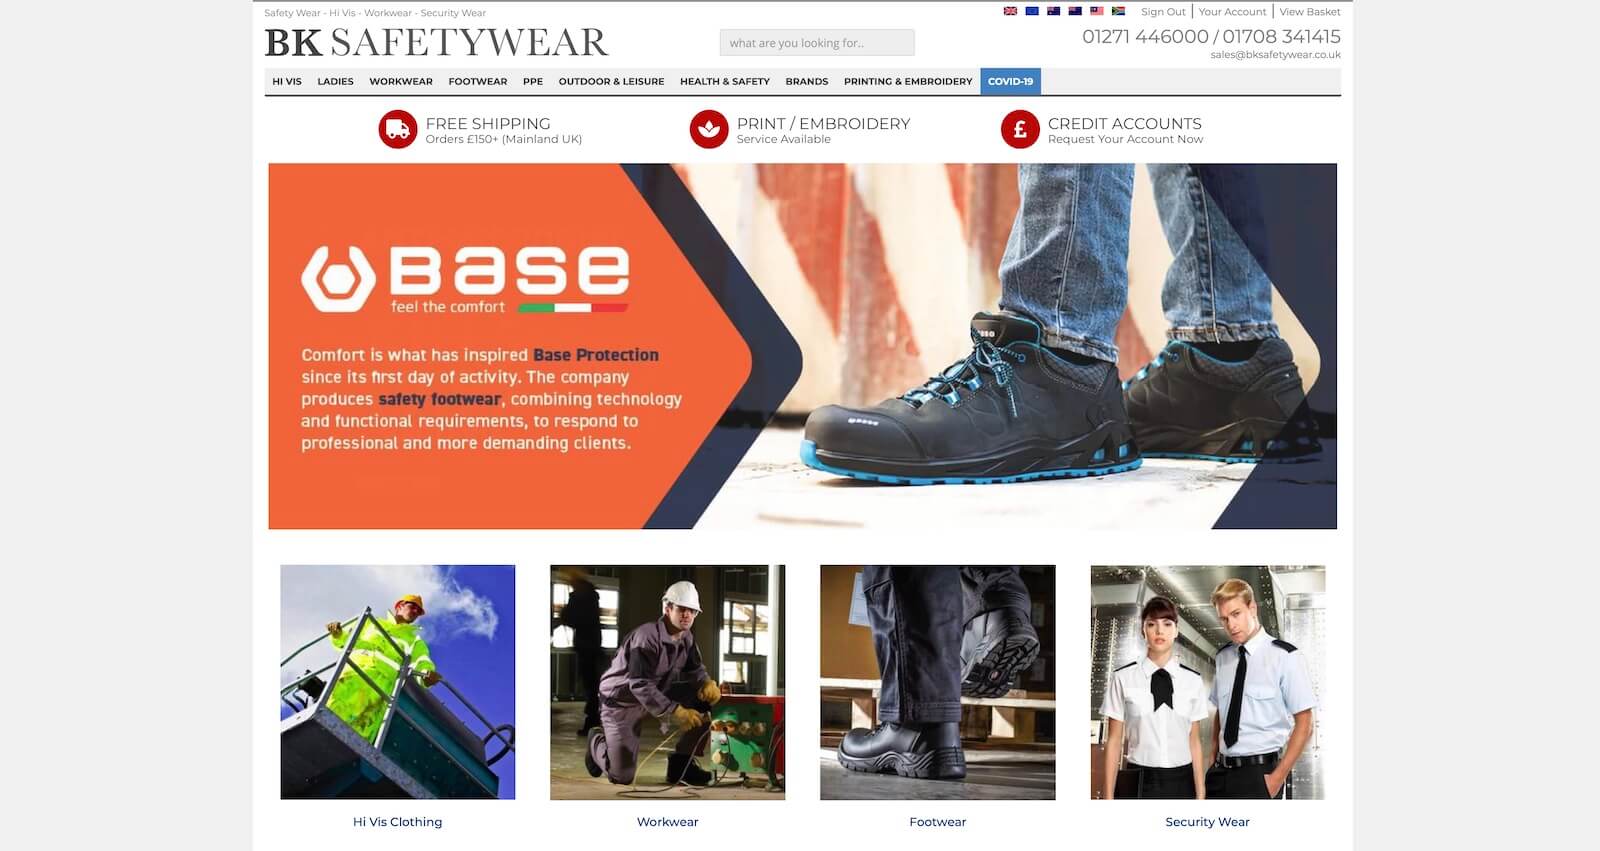 BK Safetywear Website Design